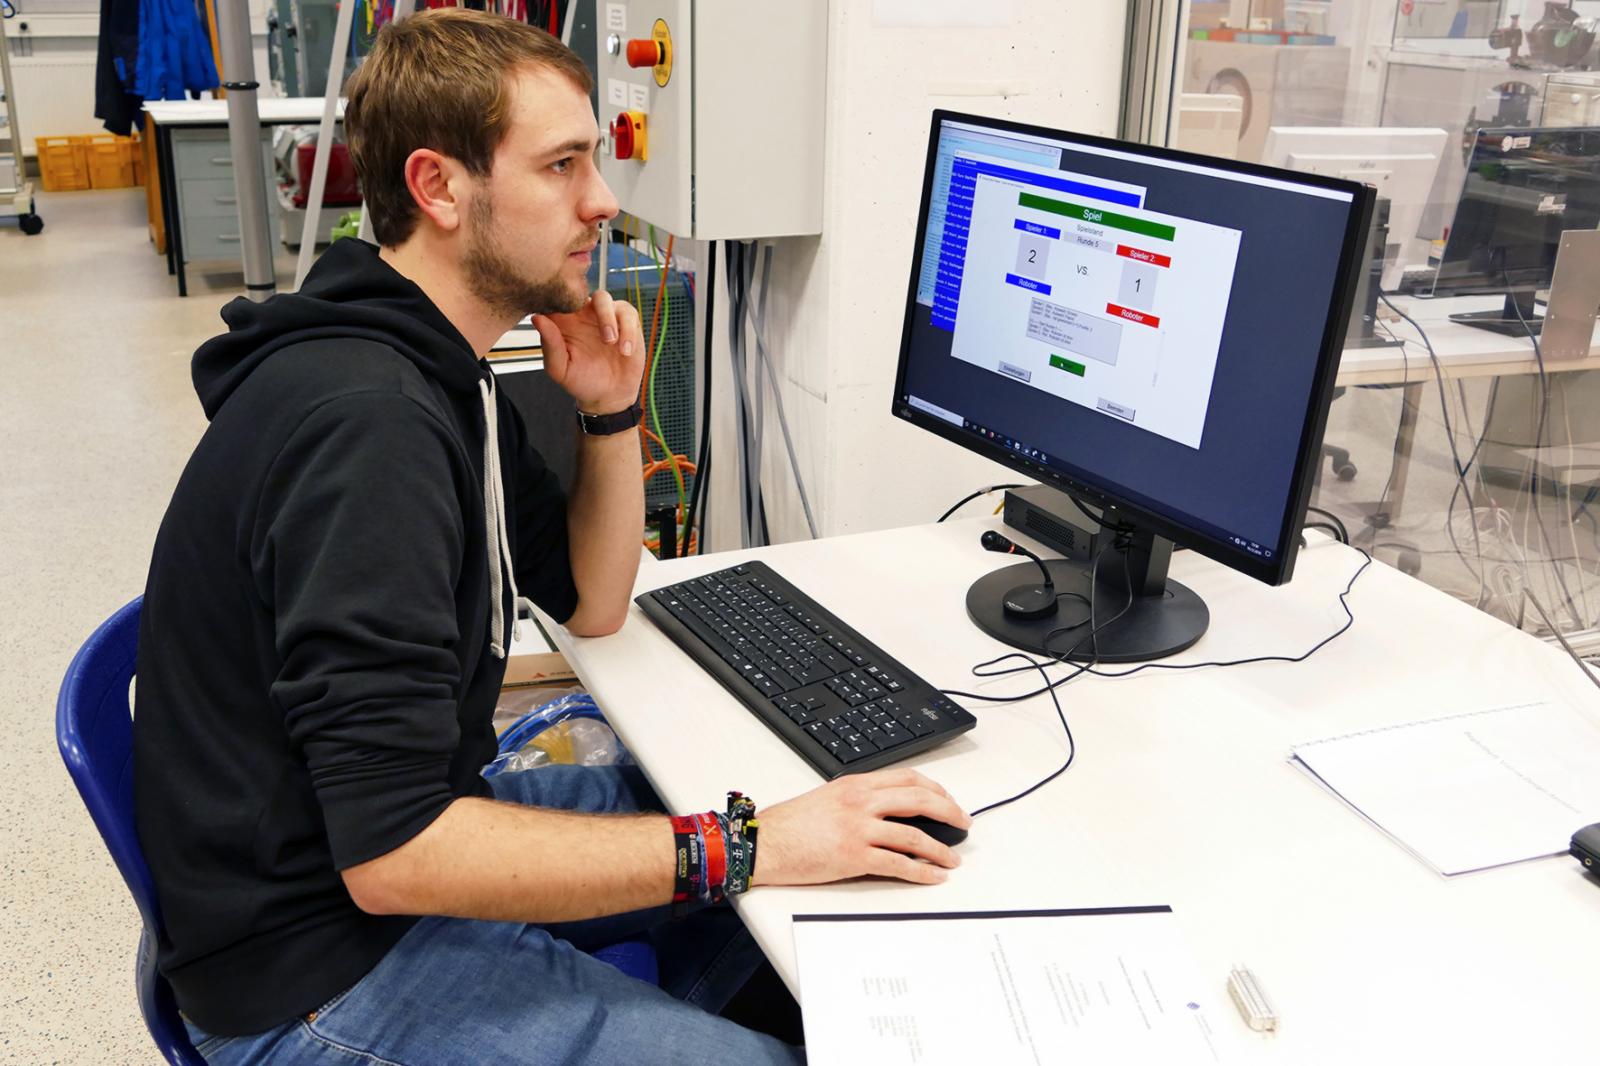 Lukas Brink testet die grafische Oberfläche zum Spiel, die er gemeinsam mit seinem Kommilitonen Heiko Meier entwickelt hat. (Foto: FH Münster/Jana Schiller) 